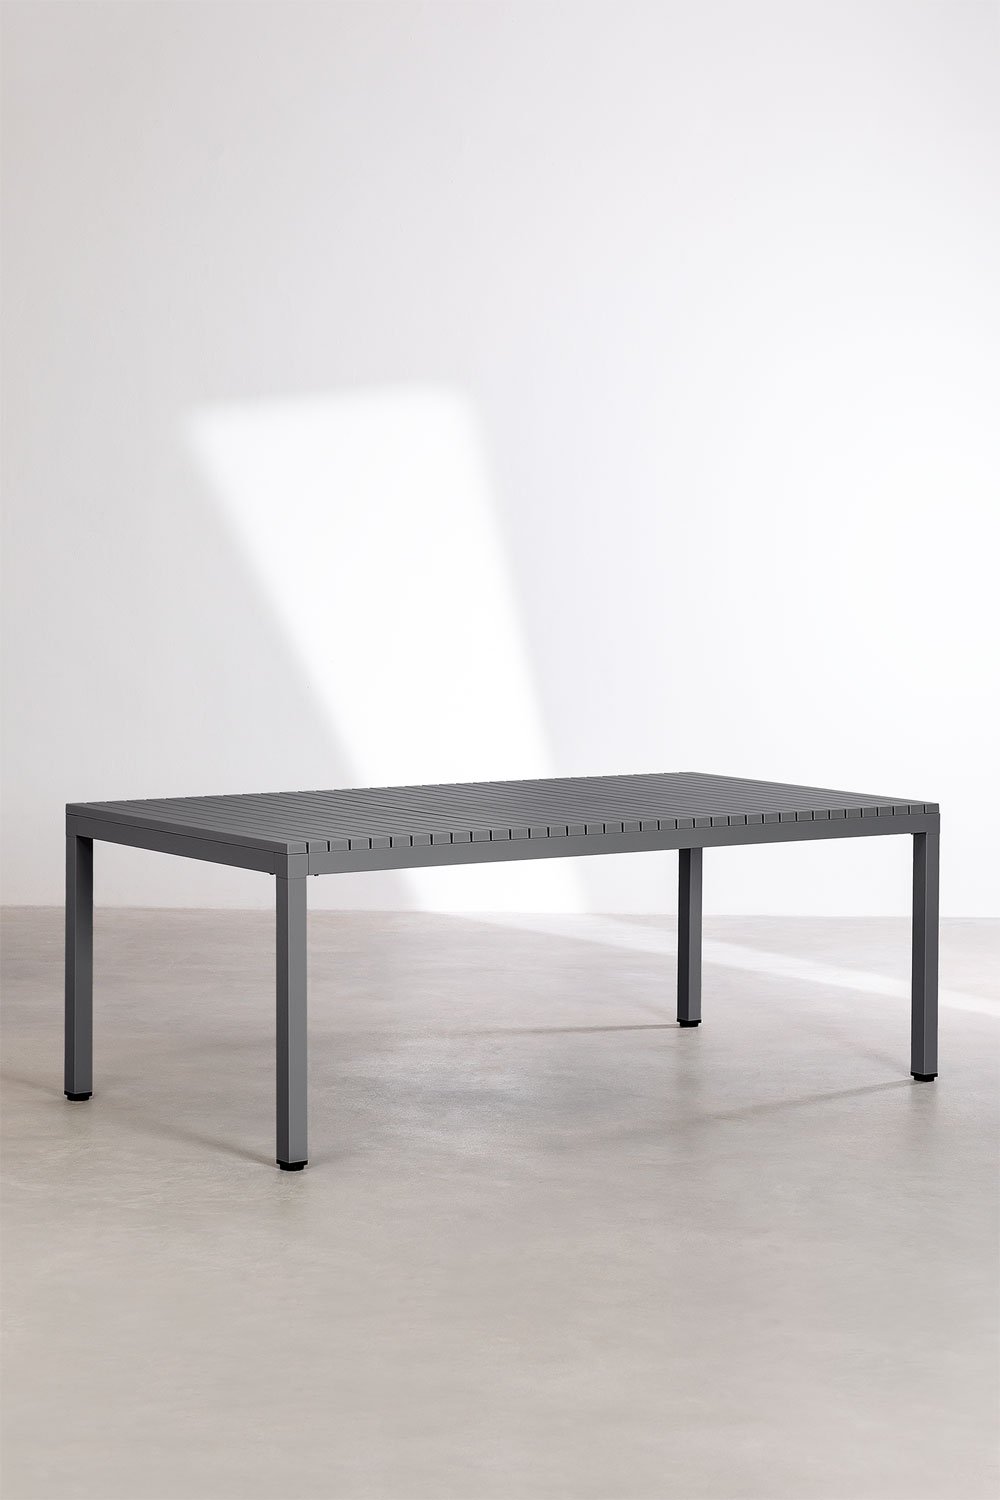 Table de Jardin Rectangulaire en Aluminium (210x100 cm) Marti, image de la galerie 1